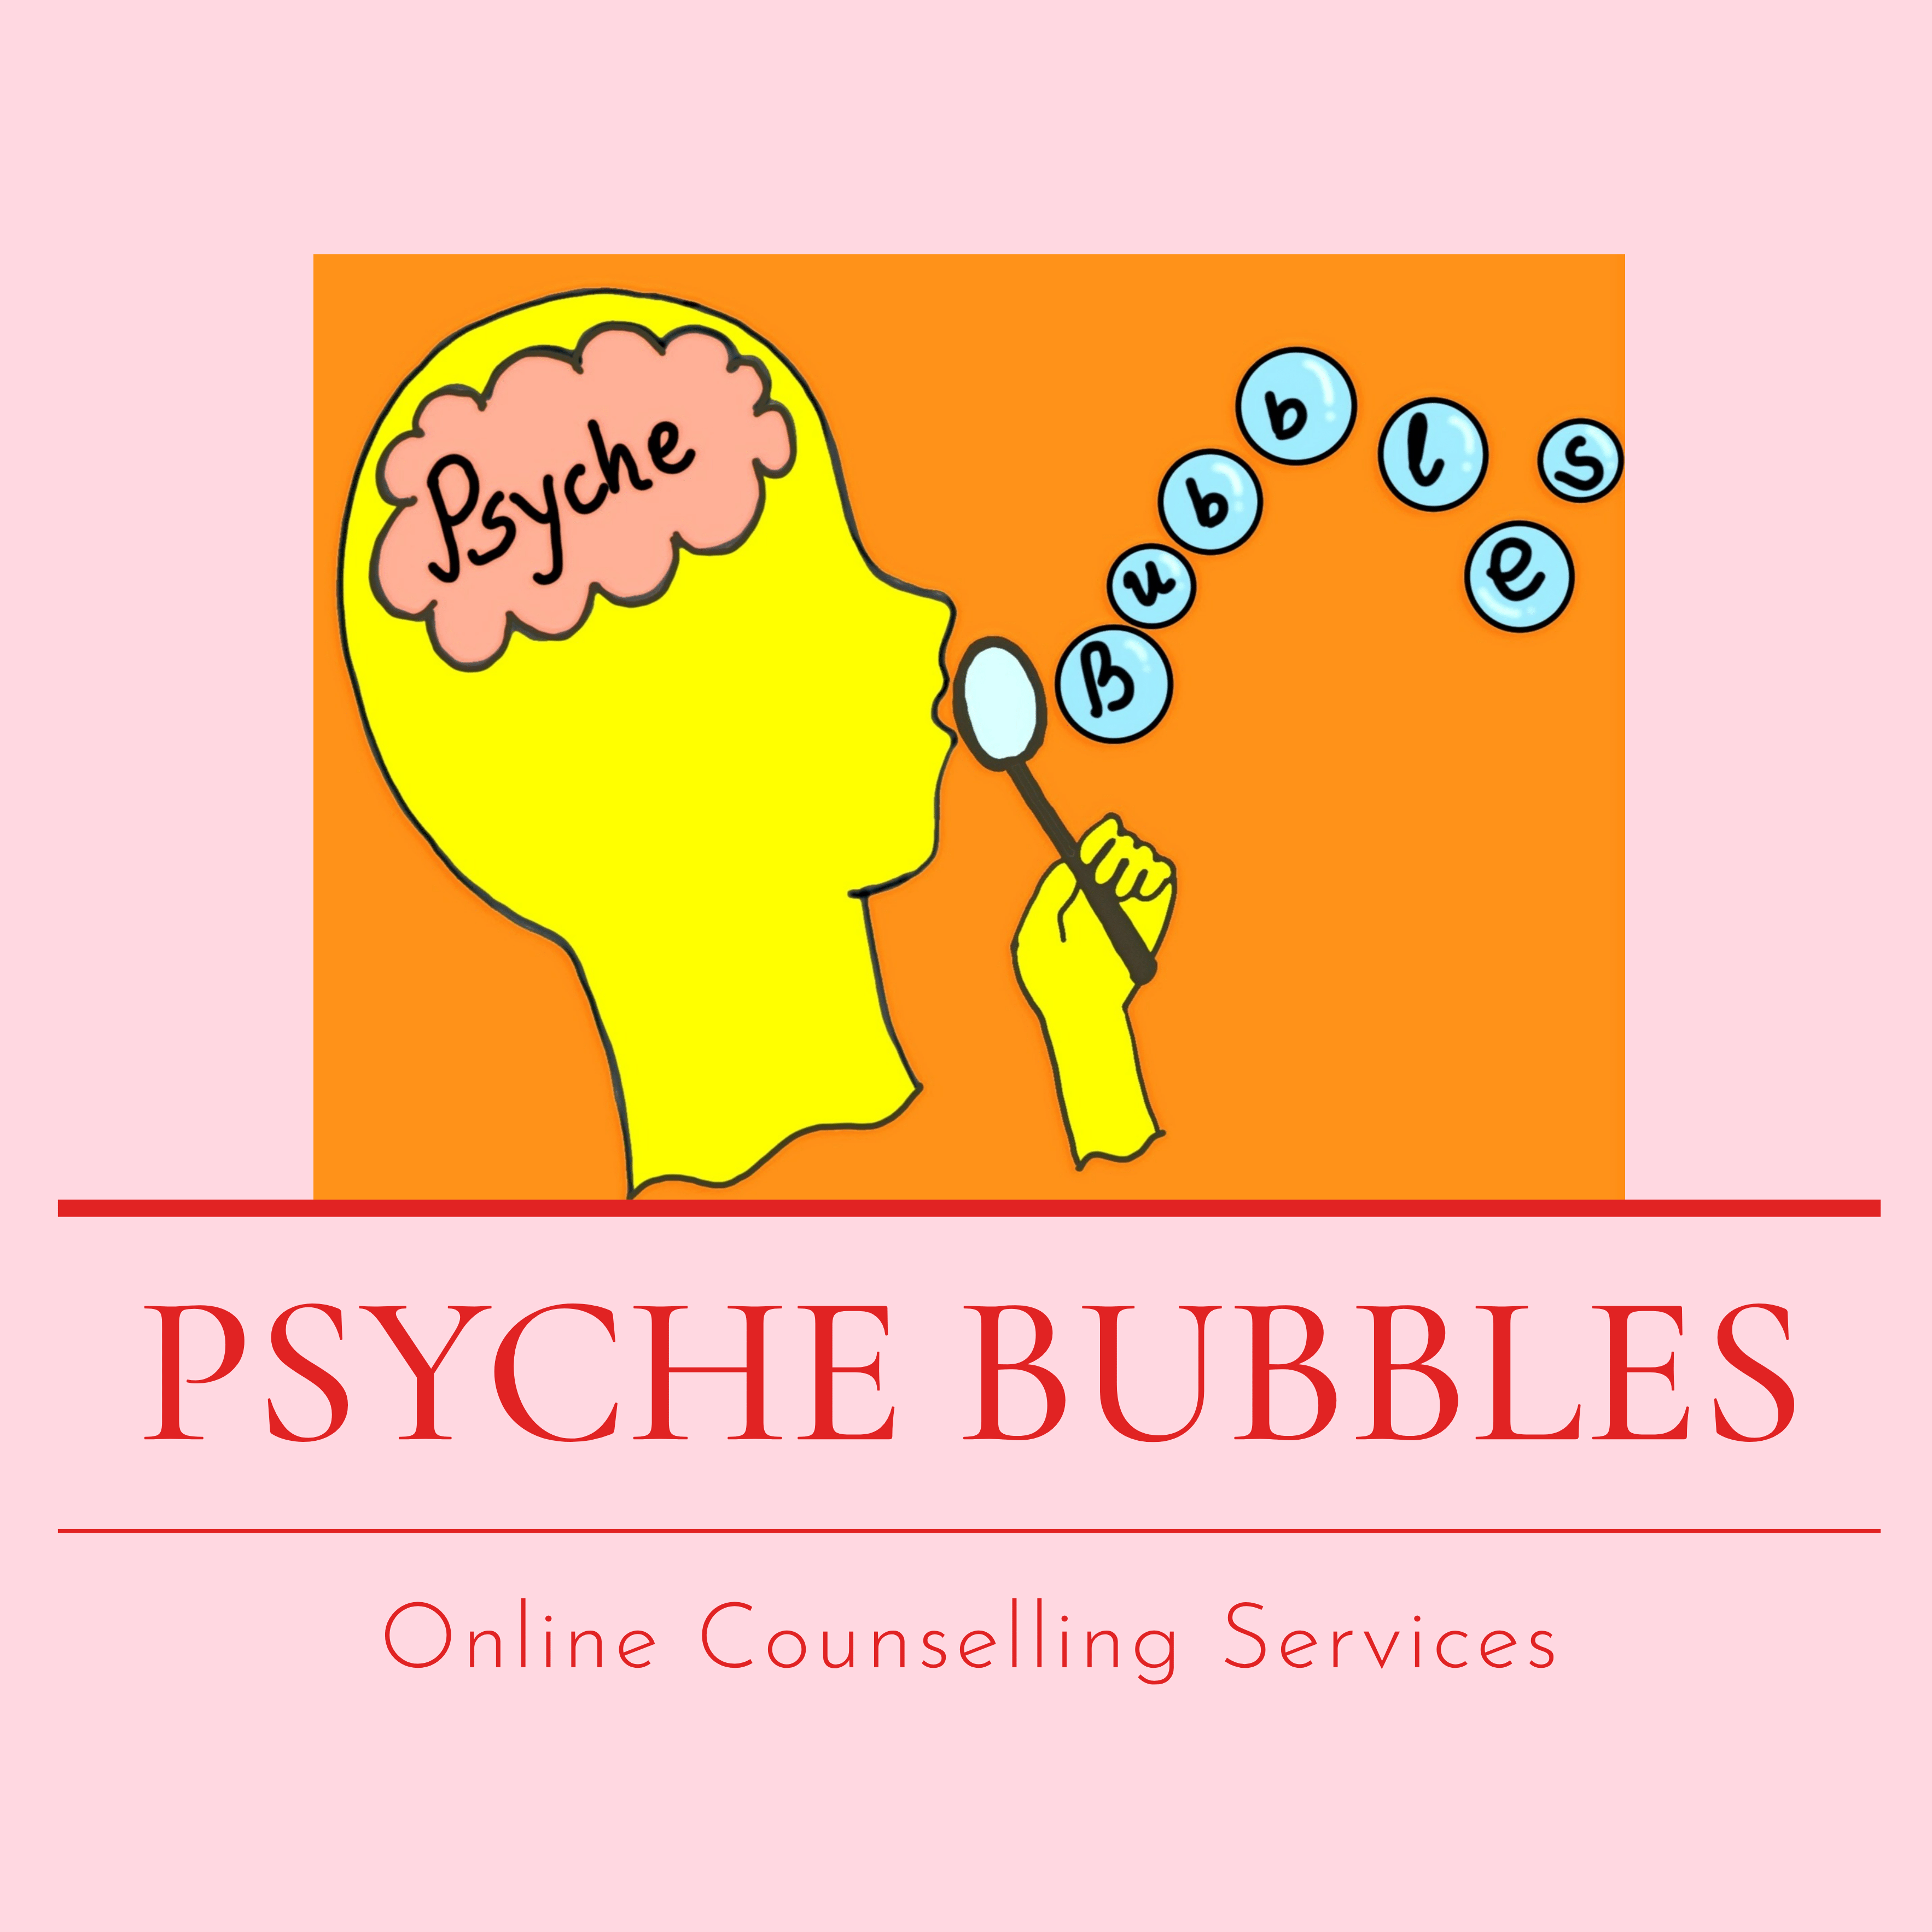 Psyche Bubbles